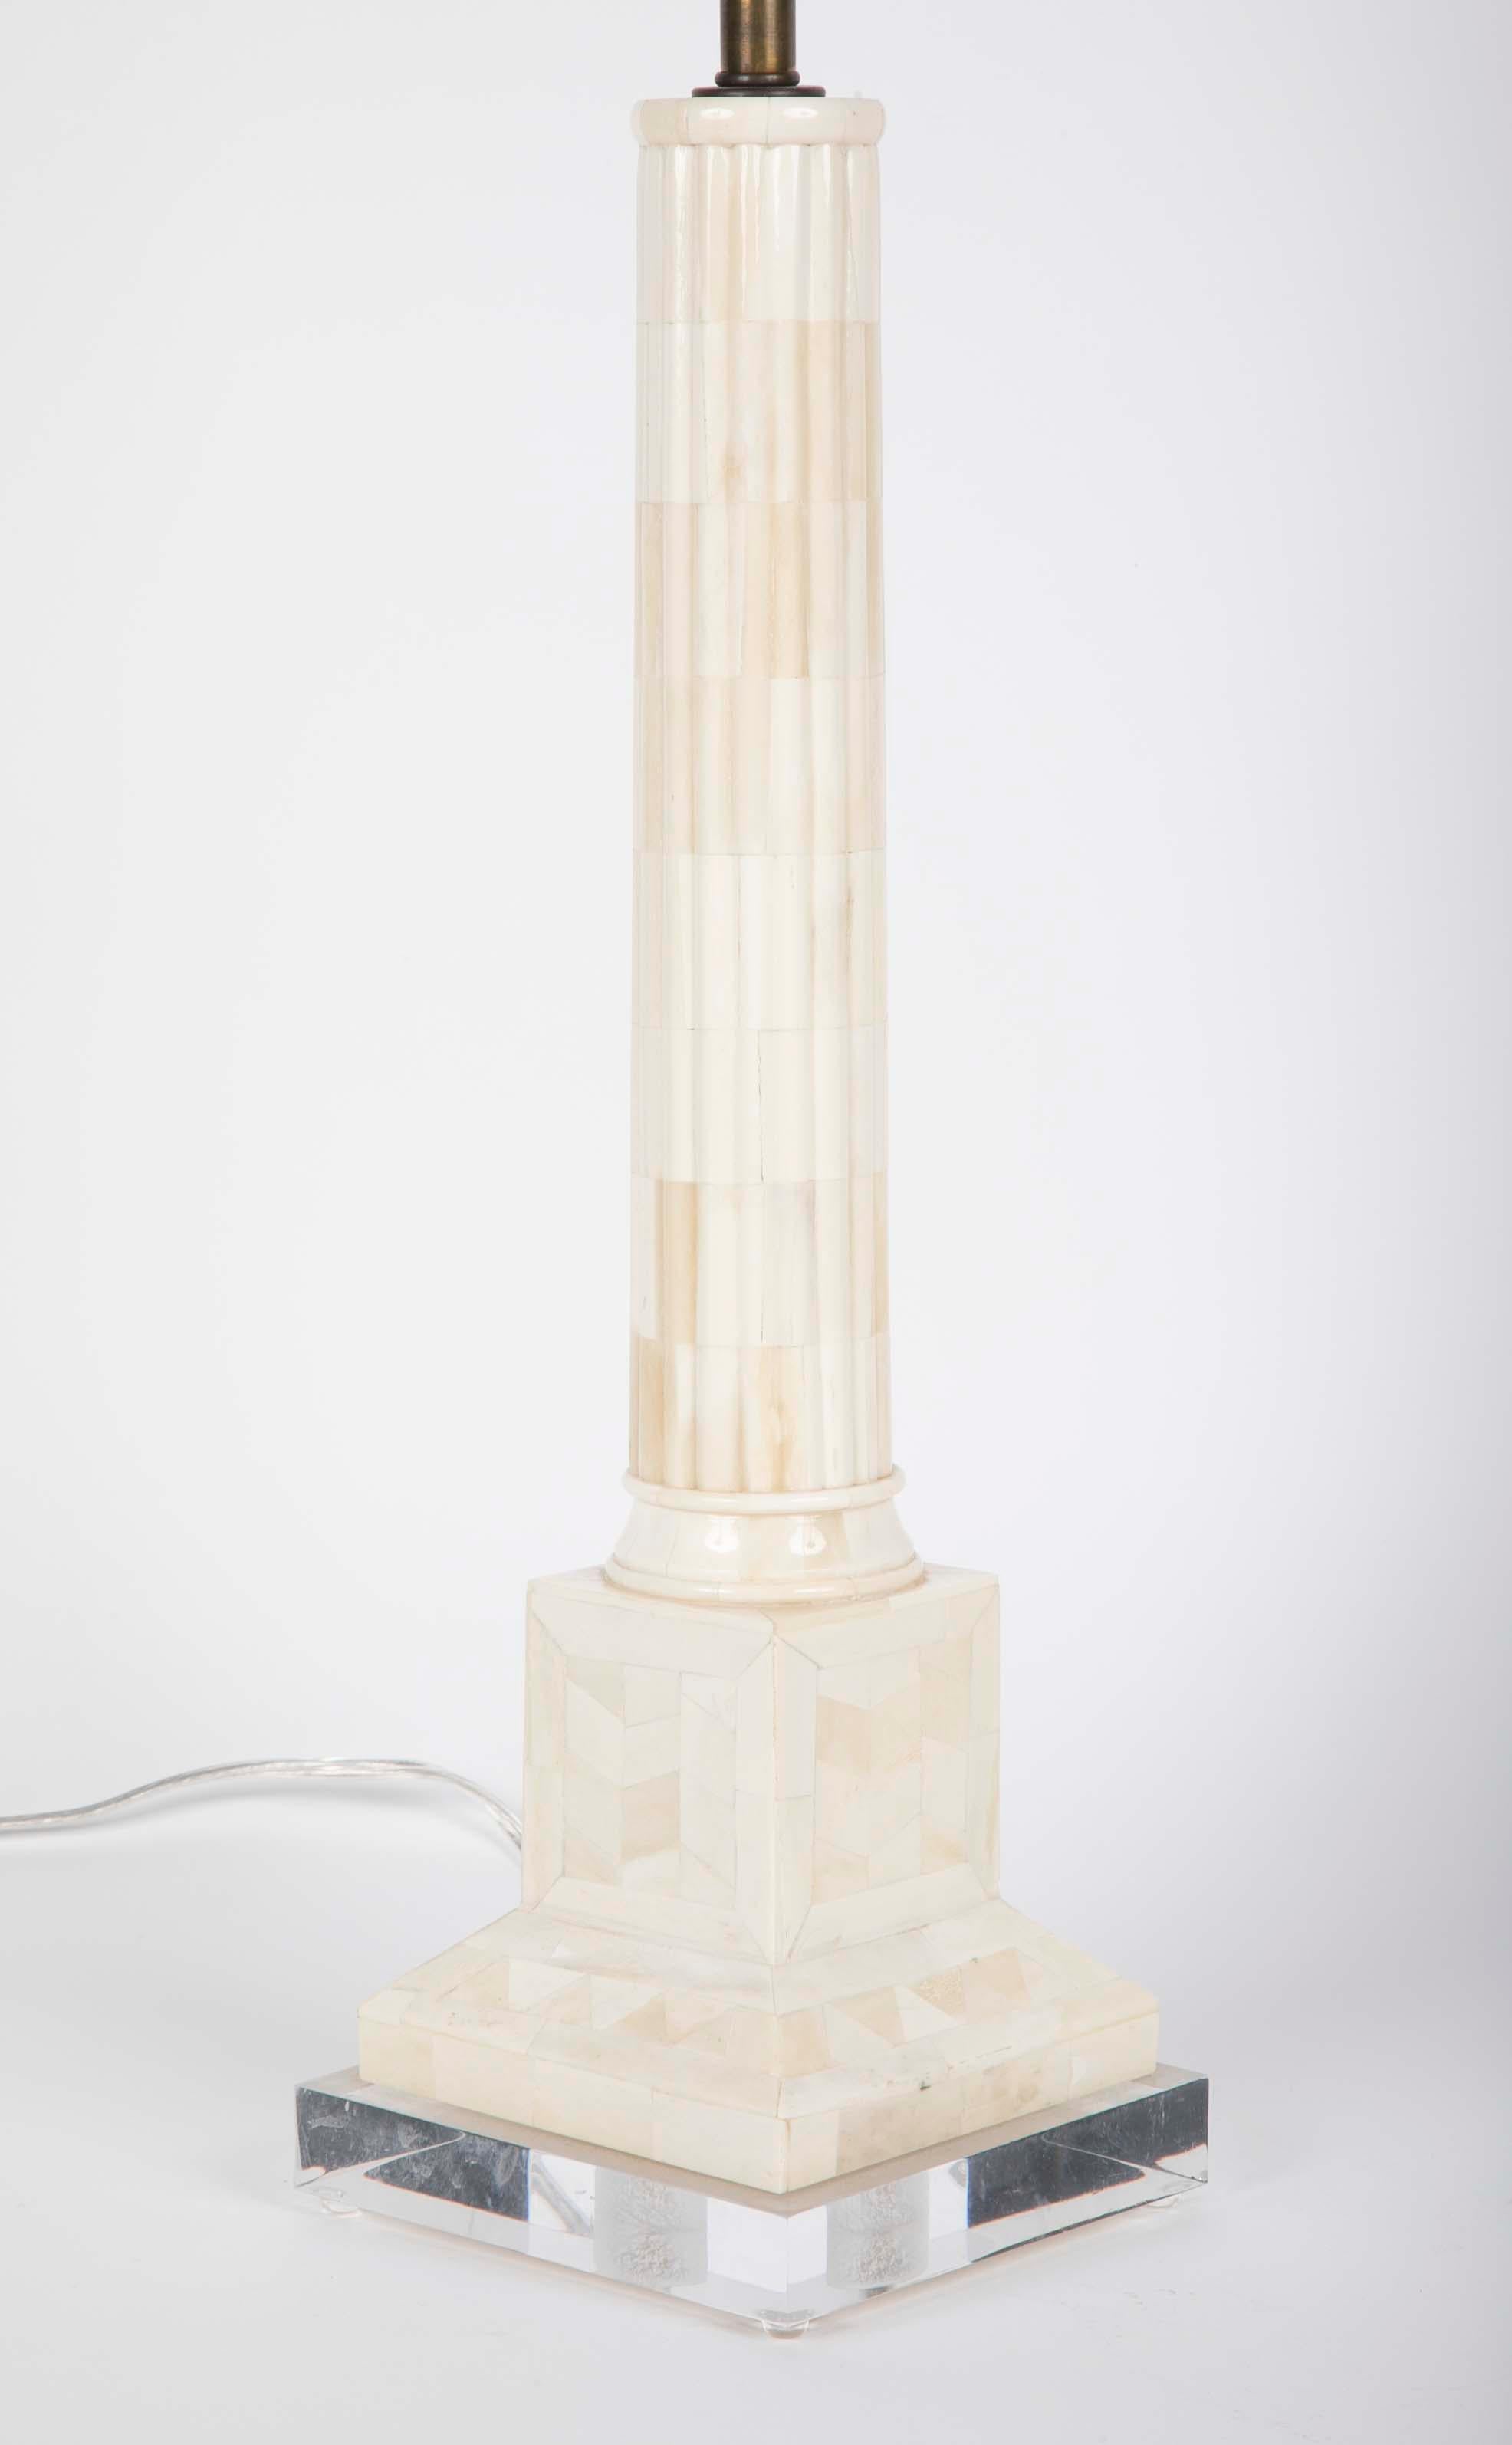 Une élégante paire de lampes de table en forme de colonne en os tessellé et poli. Inspirées des colonnes de marbre romaines, ces lampes sont l'expression moderne parfaite du néoclassique. Les arbres ronds reposent sur des socles carrés soutenus par